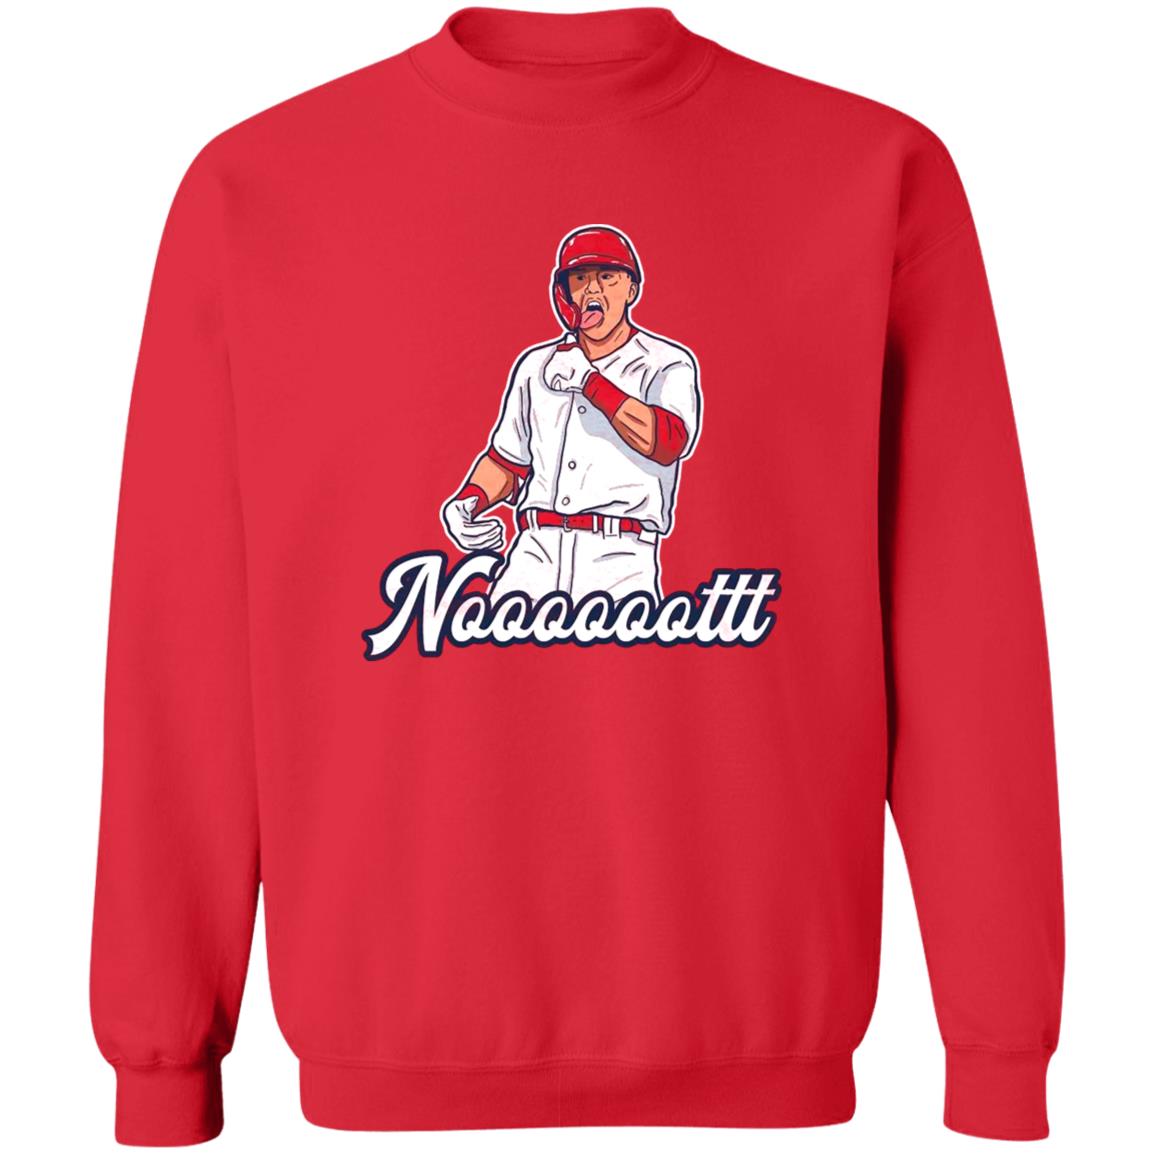 HOT NEW!! Lars Nootbaar #21 St. Louis Cardinals T-Shirt S-3XL